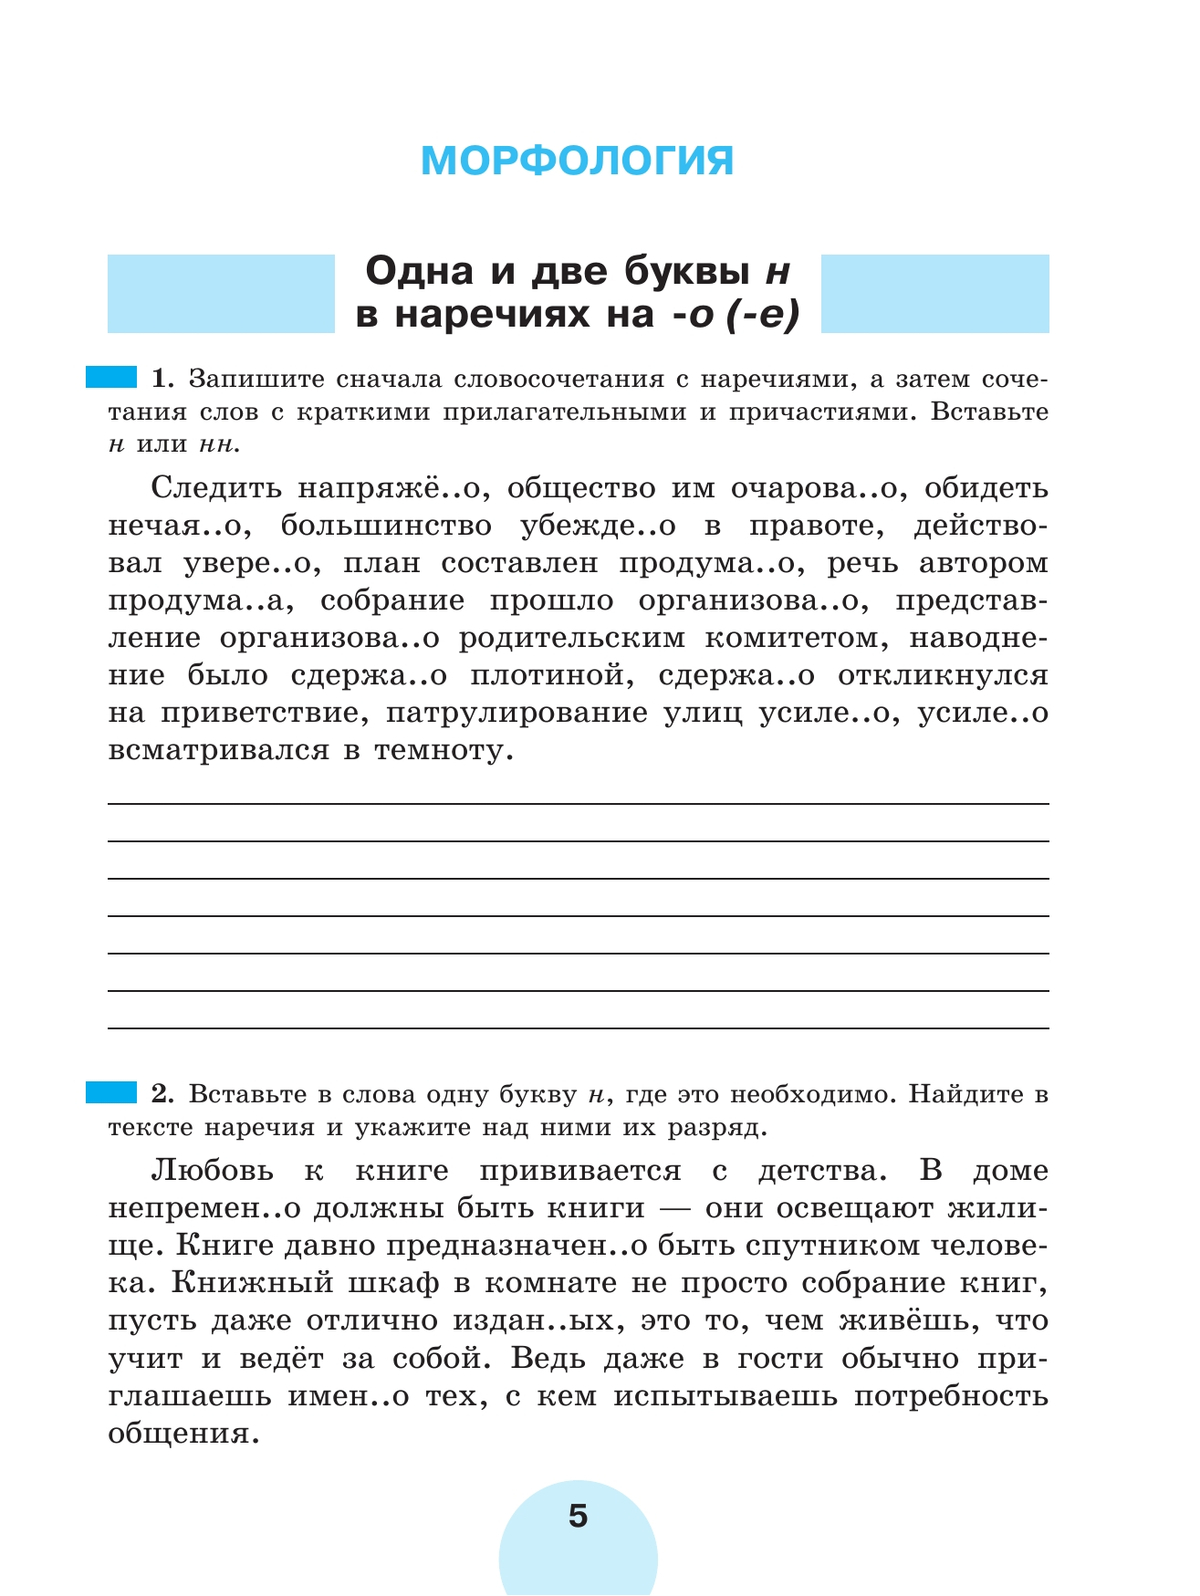 Русский язык. Рабочая тетрадь. 7 класс. В 2 ч. Часть 2 2